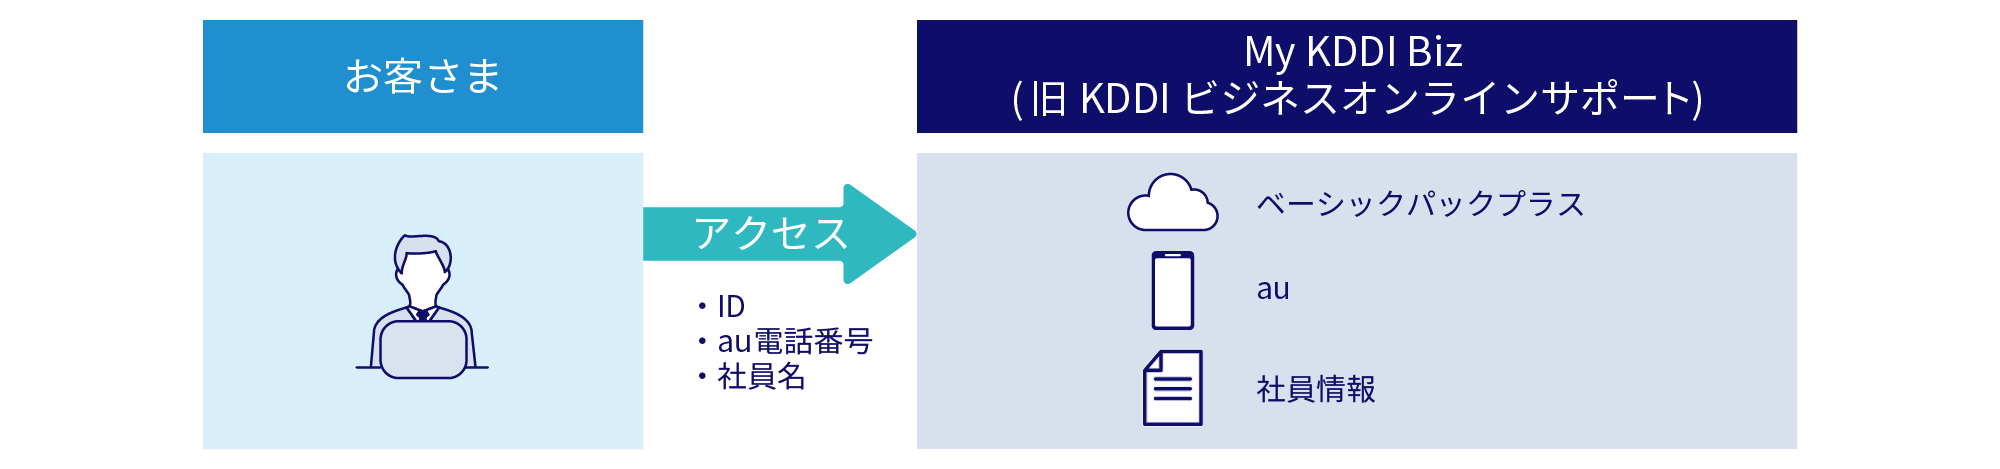 「ベーシックパックプラス」の対象サービスとau契約、社員情報などがMy KDDI Biz (旧 KDDI ビジネスオンラインサポート) で一元管理できます。